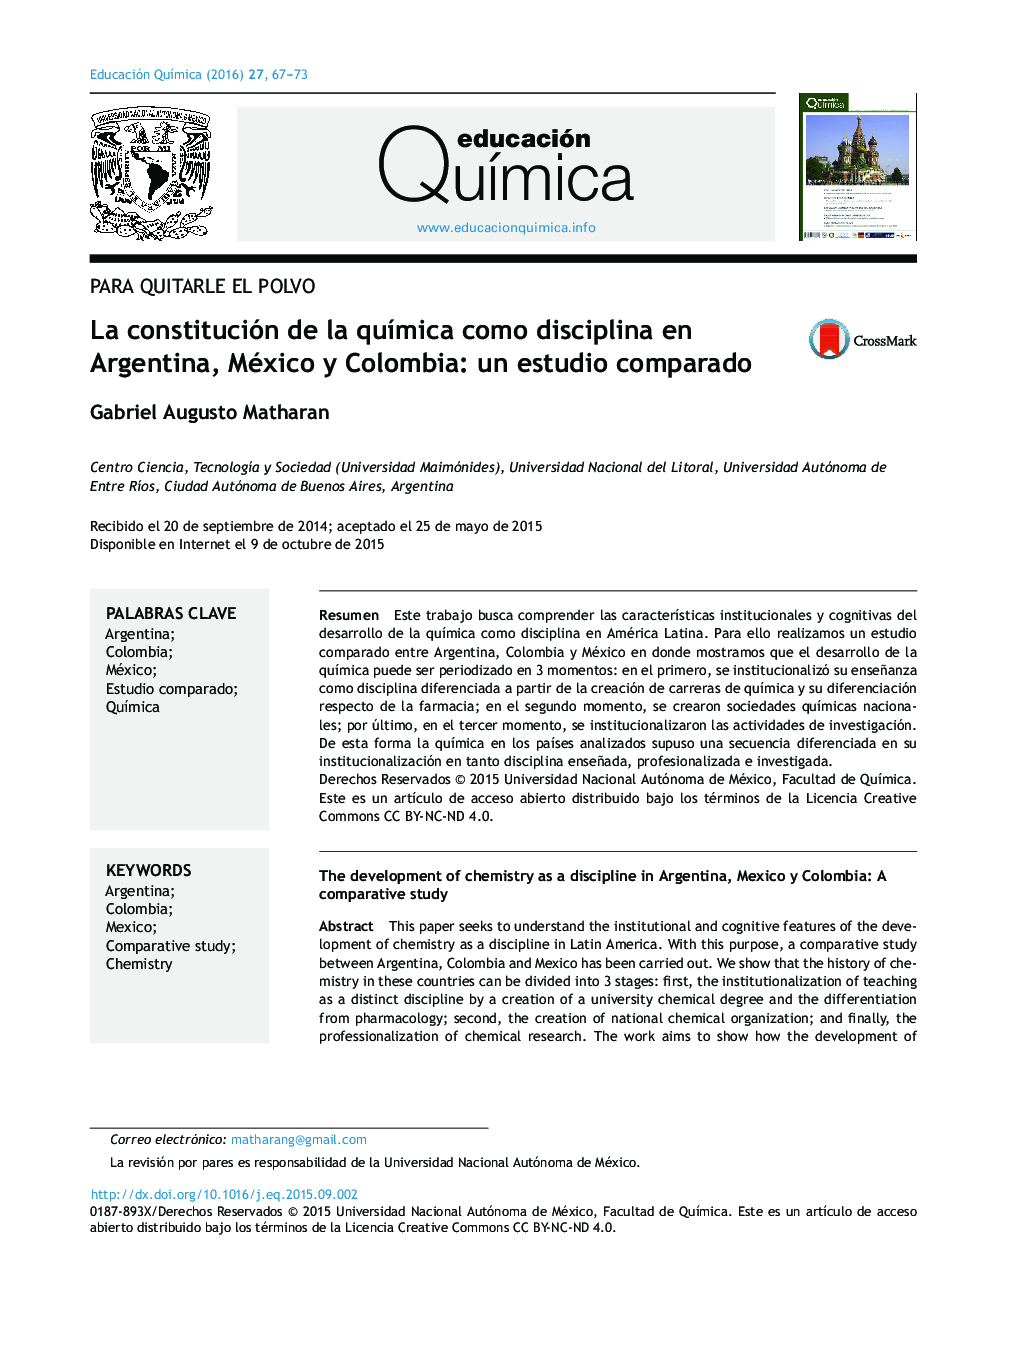 La constitución de la química como disciplina en Argentina, México y Colombia: un estudio comparado 